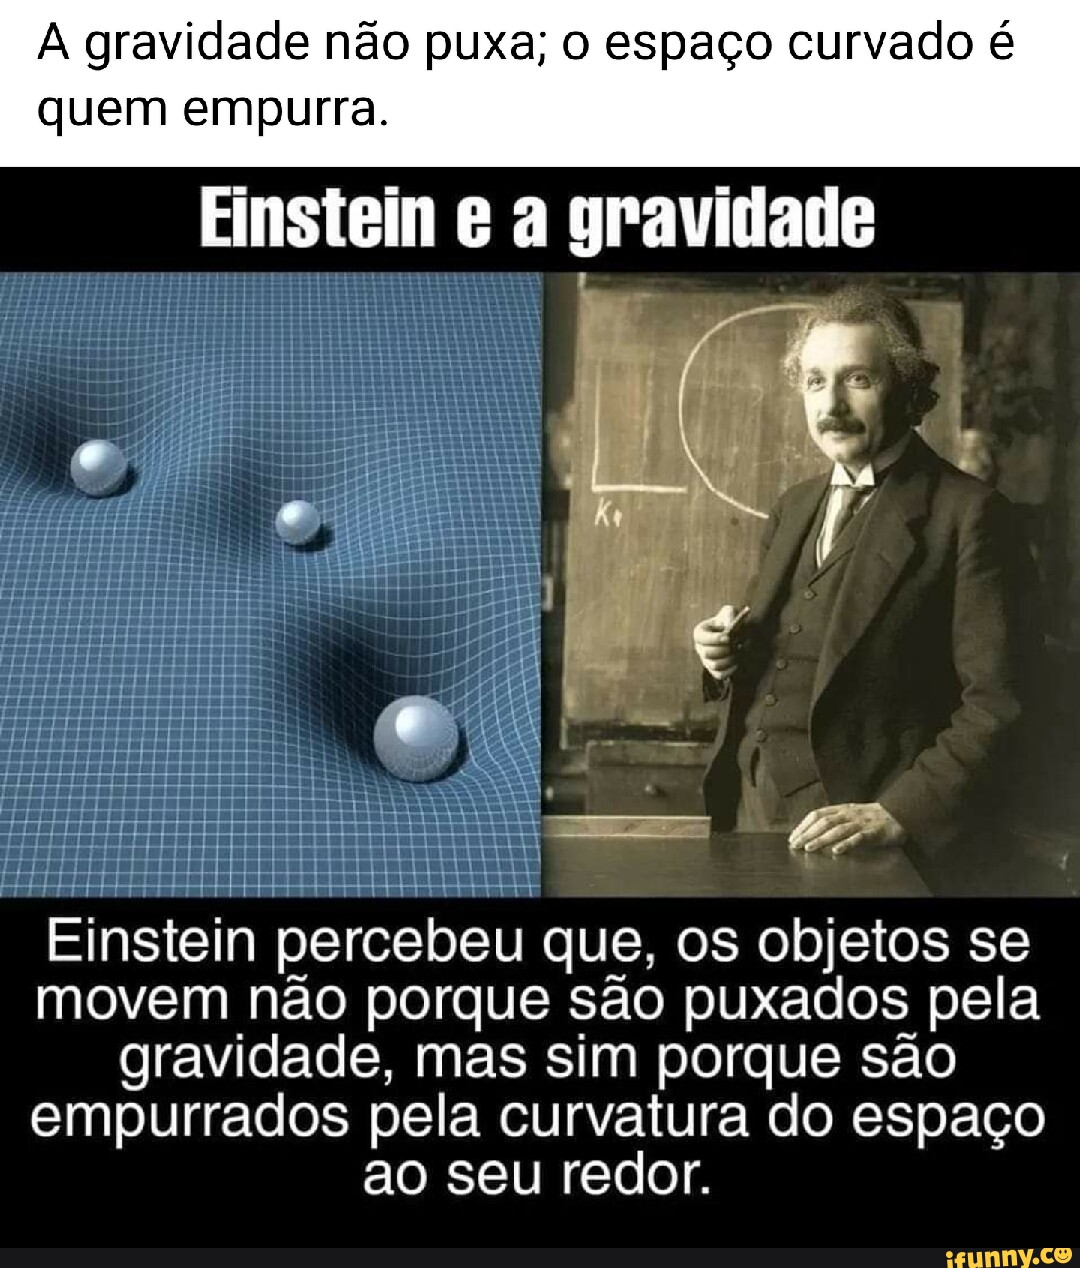 A gravidade não puxa o espaço curvado é quem empurra Einstein a gravidade Einstein percebeu